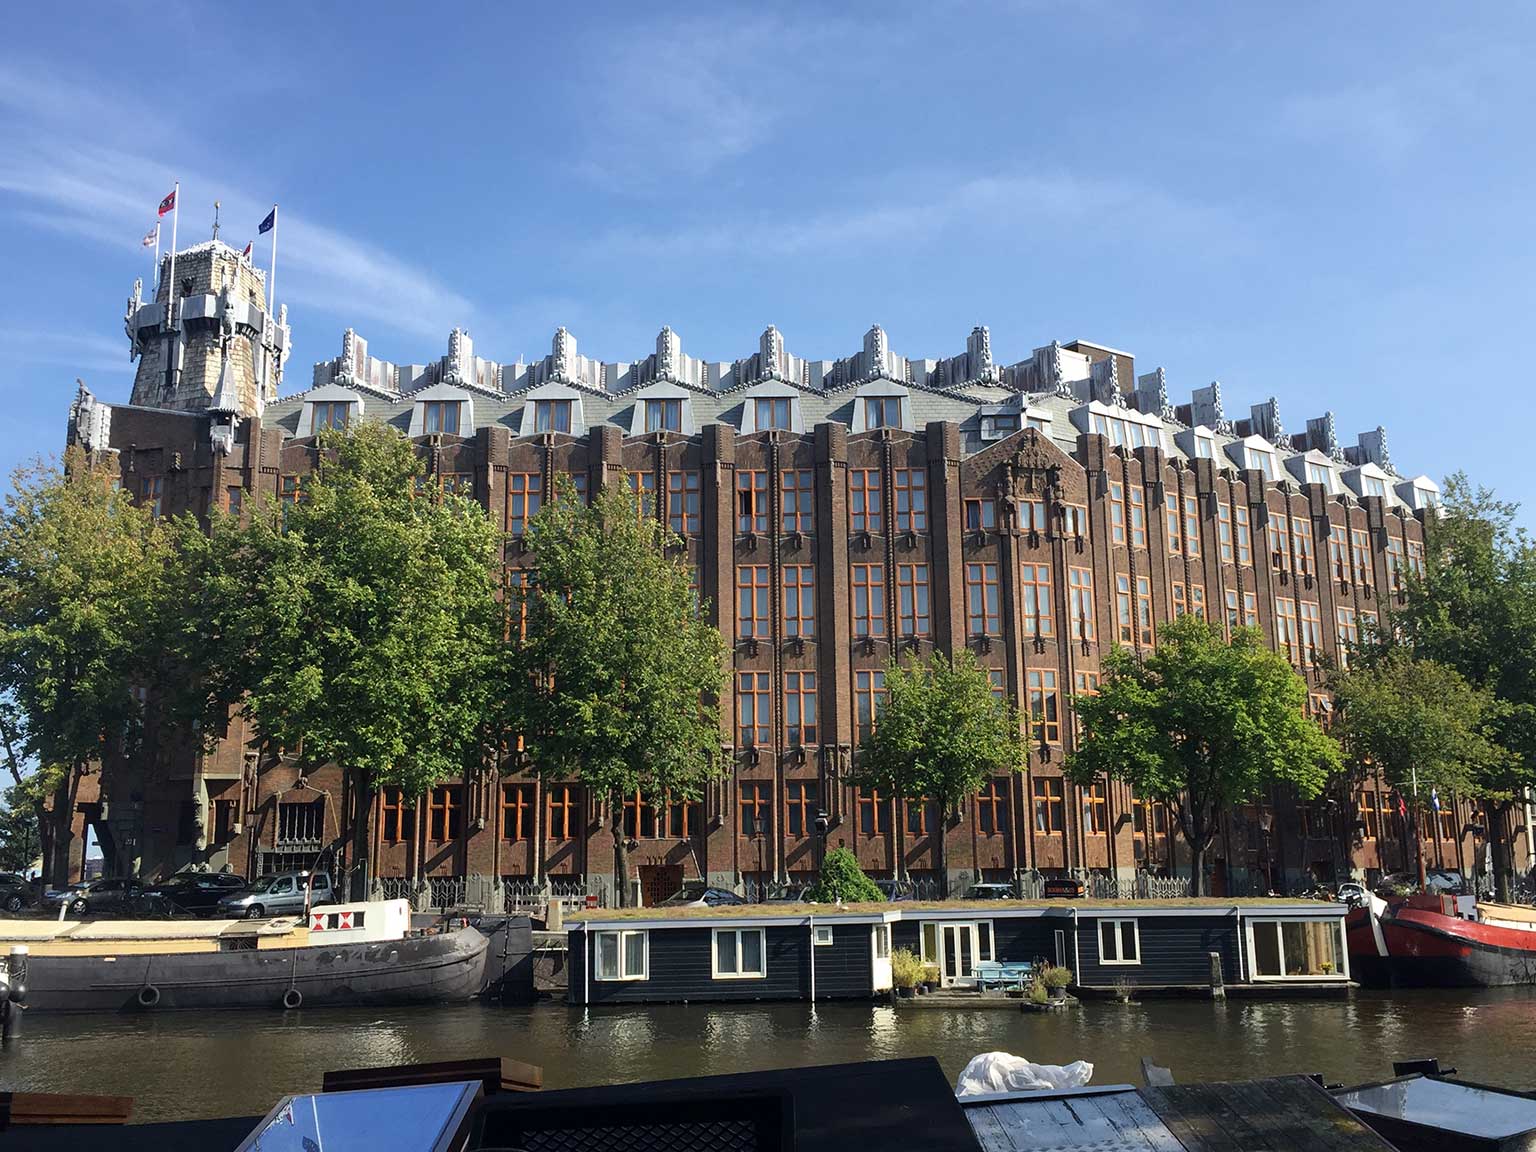 Scheepvaarthuis (Hotel Amrâth), Amsterdam, on the Binnenkant side, seen from Kromme Waal